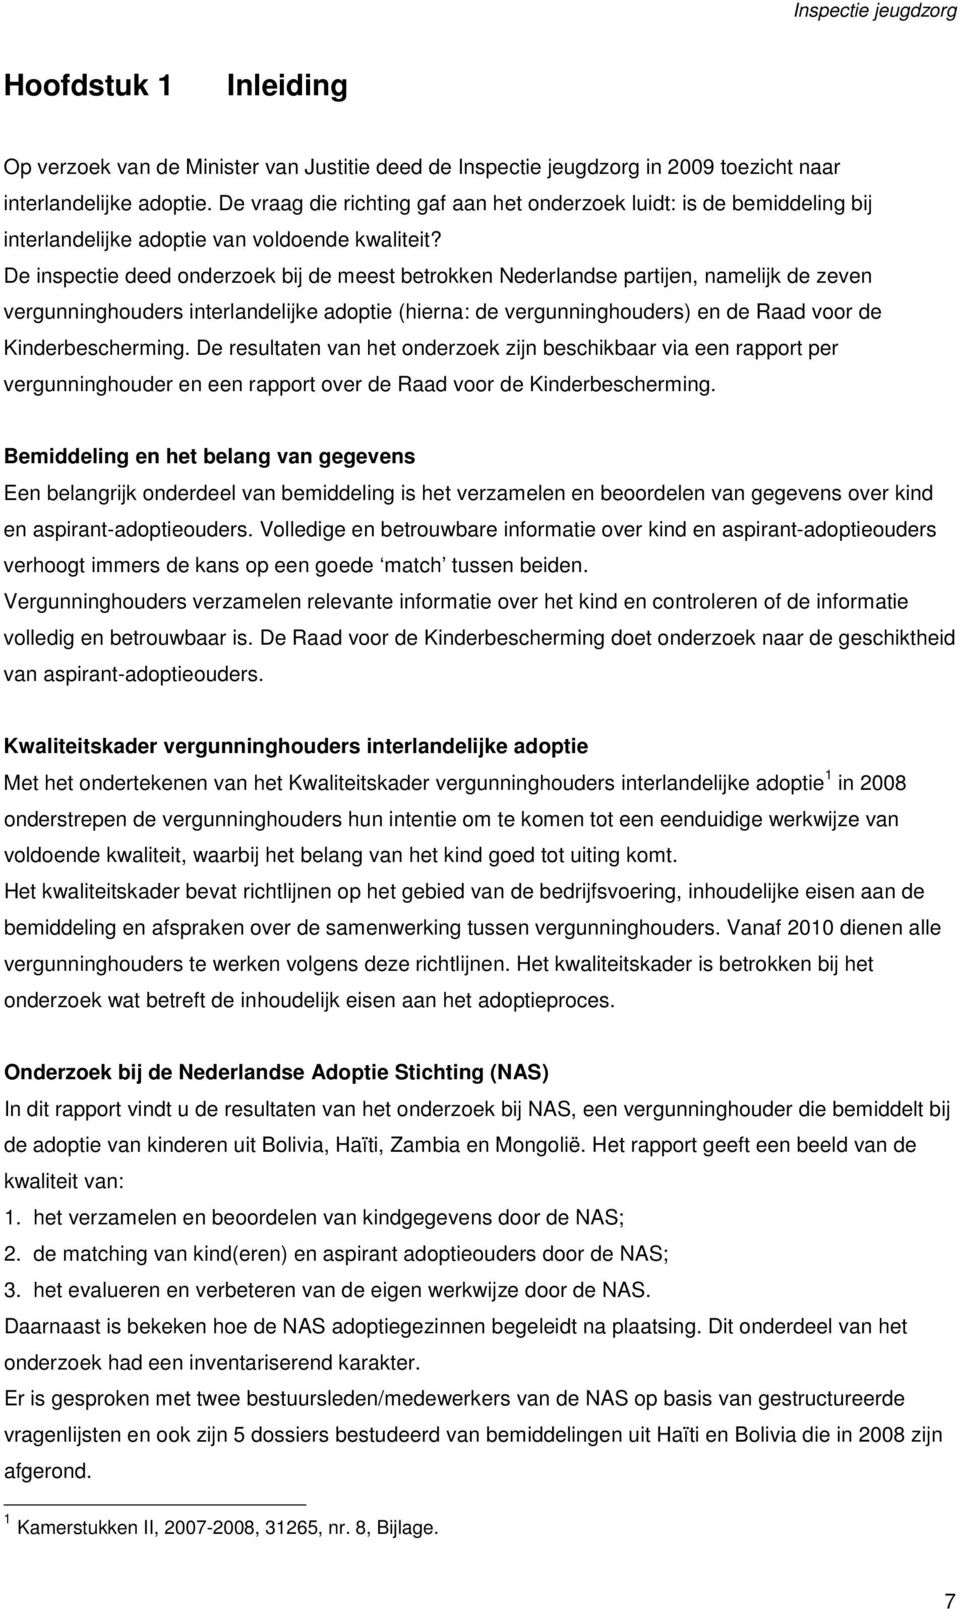 De inspectie deed onderzoek bij de meest betrokken Nederlandse partijen, namelijk de zeven vergunninghouders interlandelijke adoptie (hierna: de vergunninghouders) en de Raad voor de